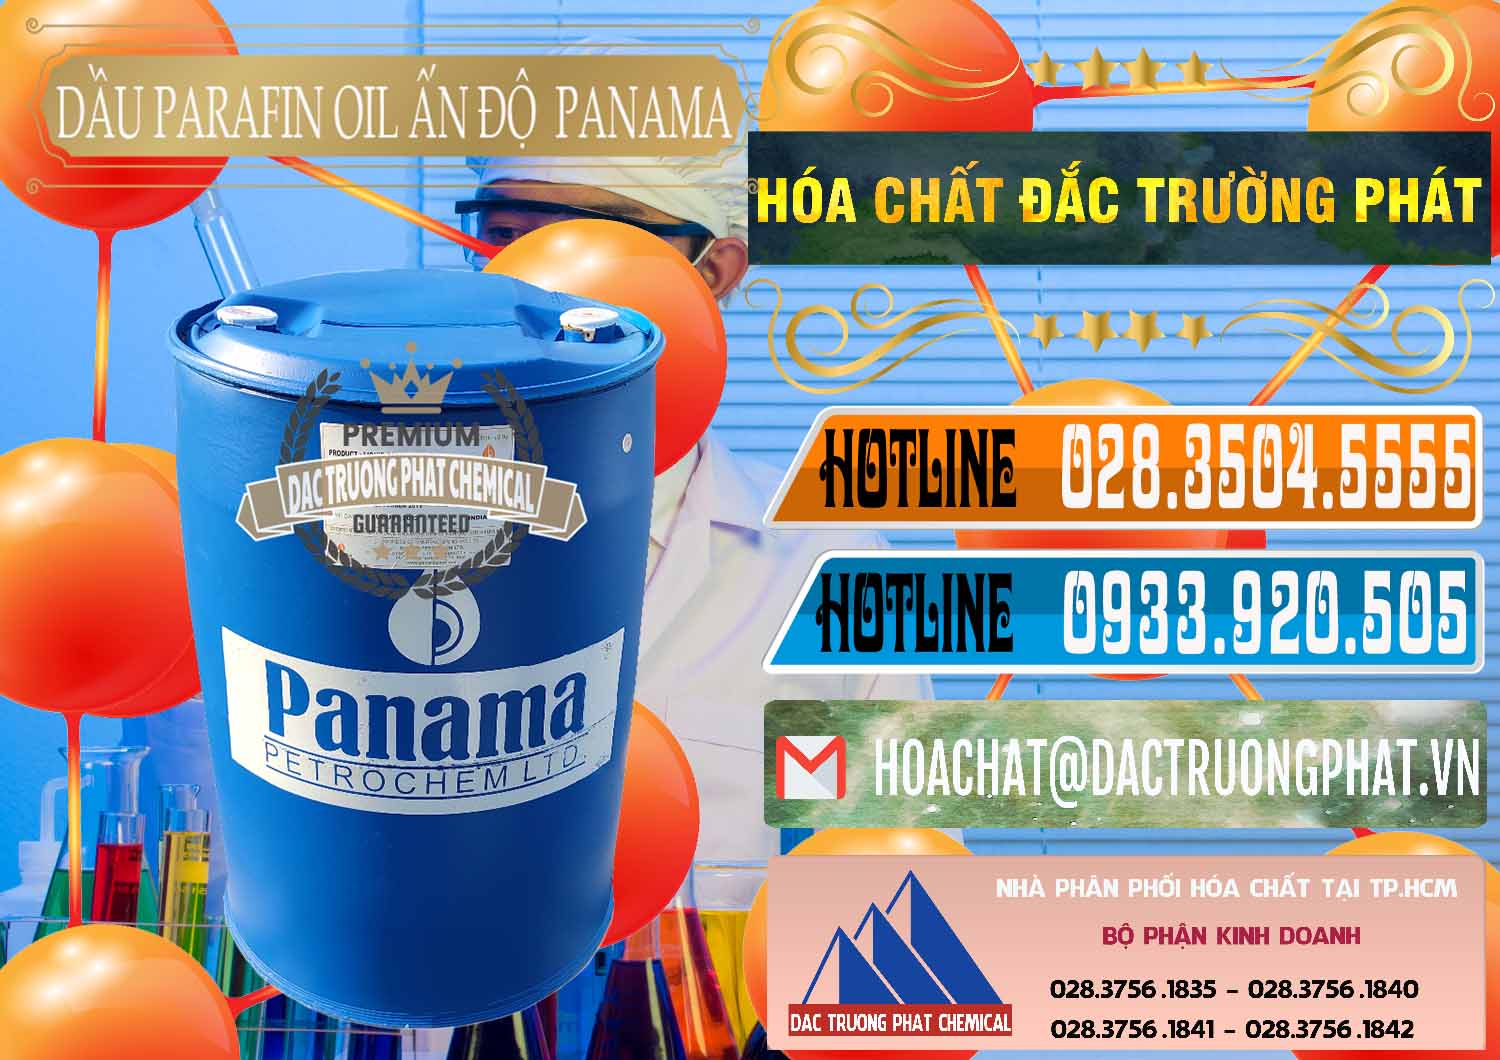 Nơi chuyên nhập khẩu - bán Dầu Parafin Oil Panama Ấn Độ India - 0061 - Chuyên cung cấp ( bán ) hóa chất tại TP.HCM - stmp.net